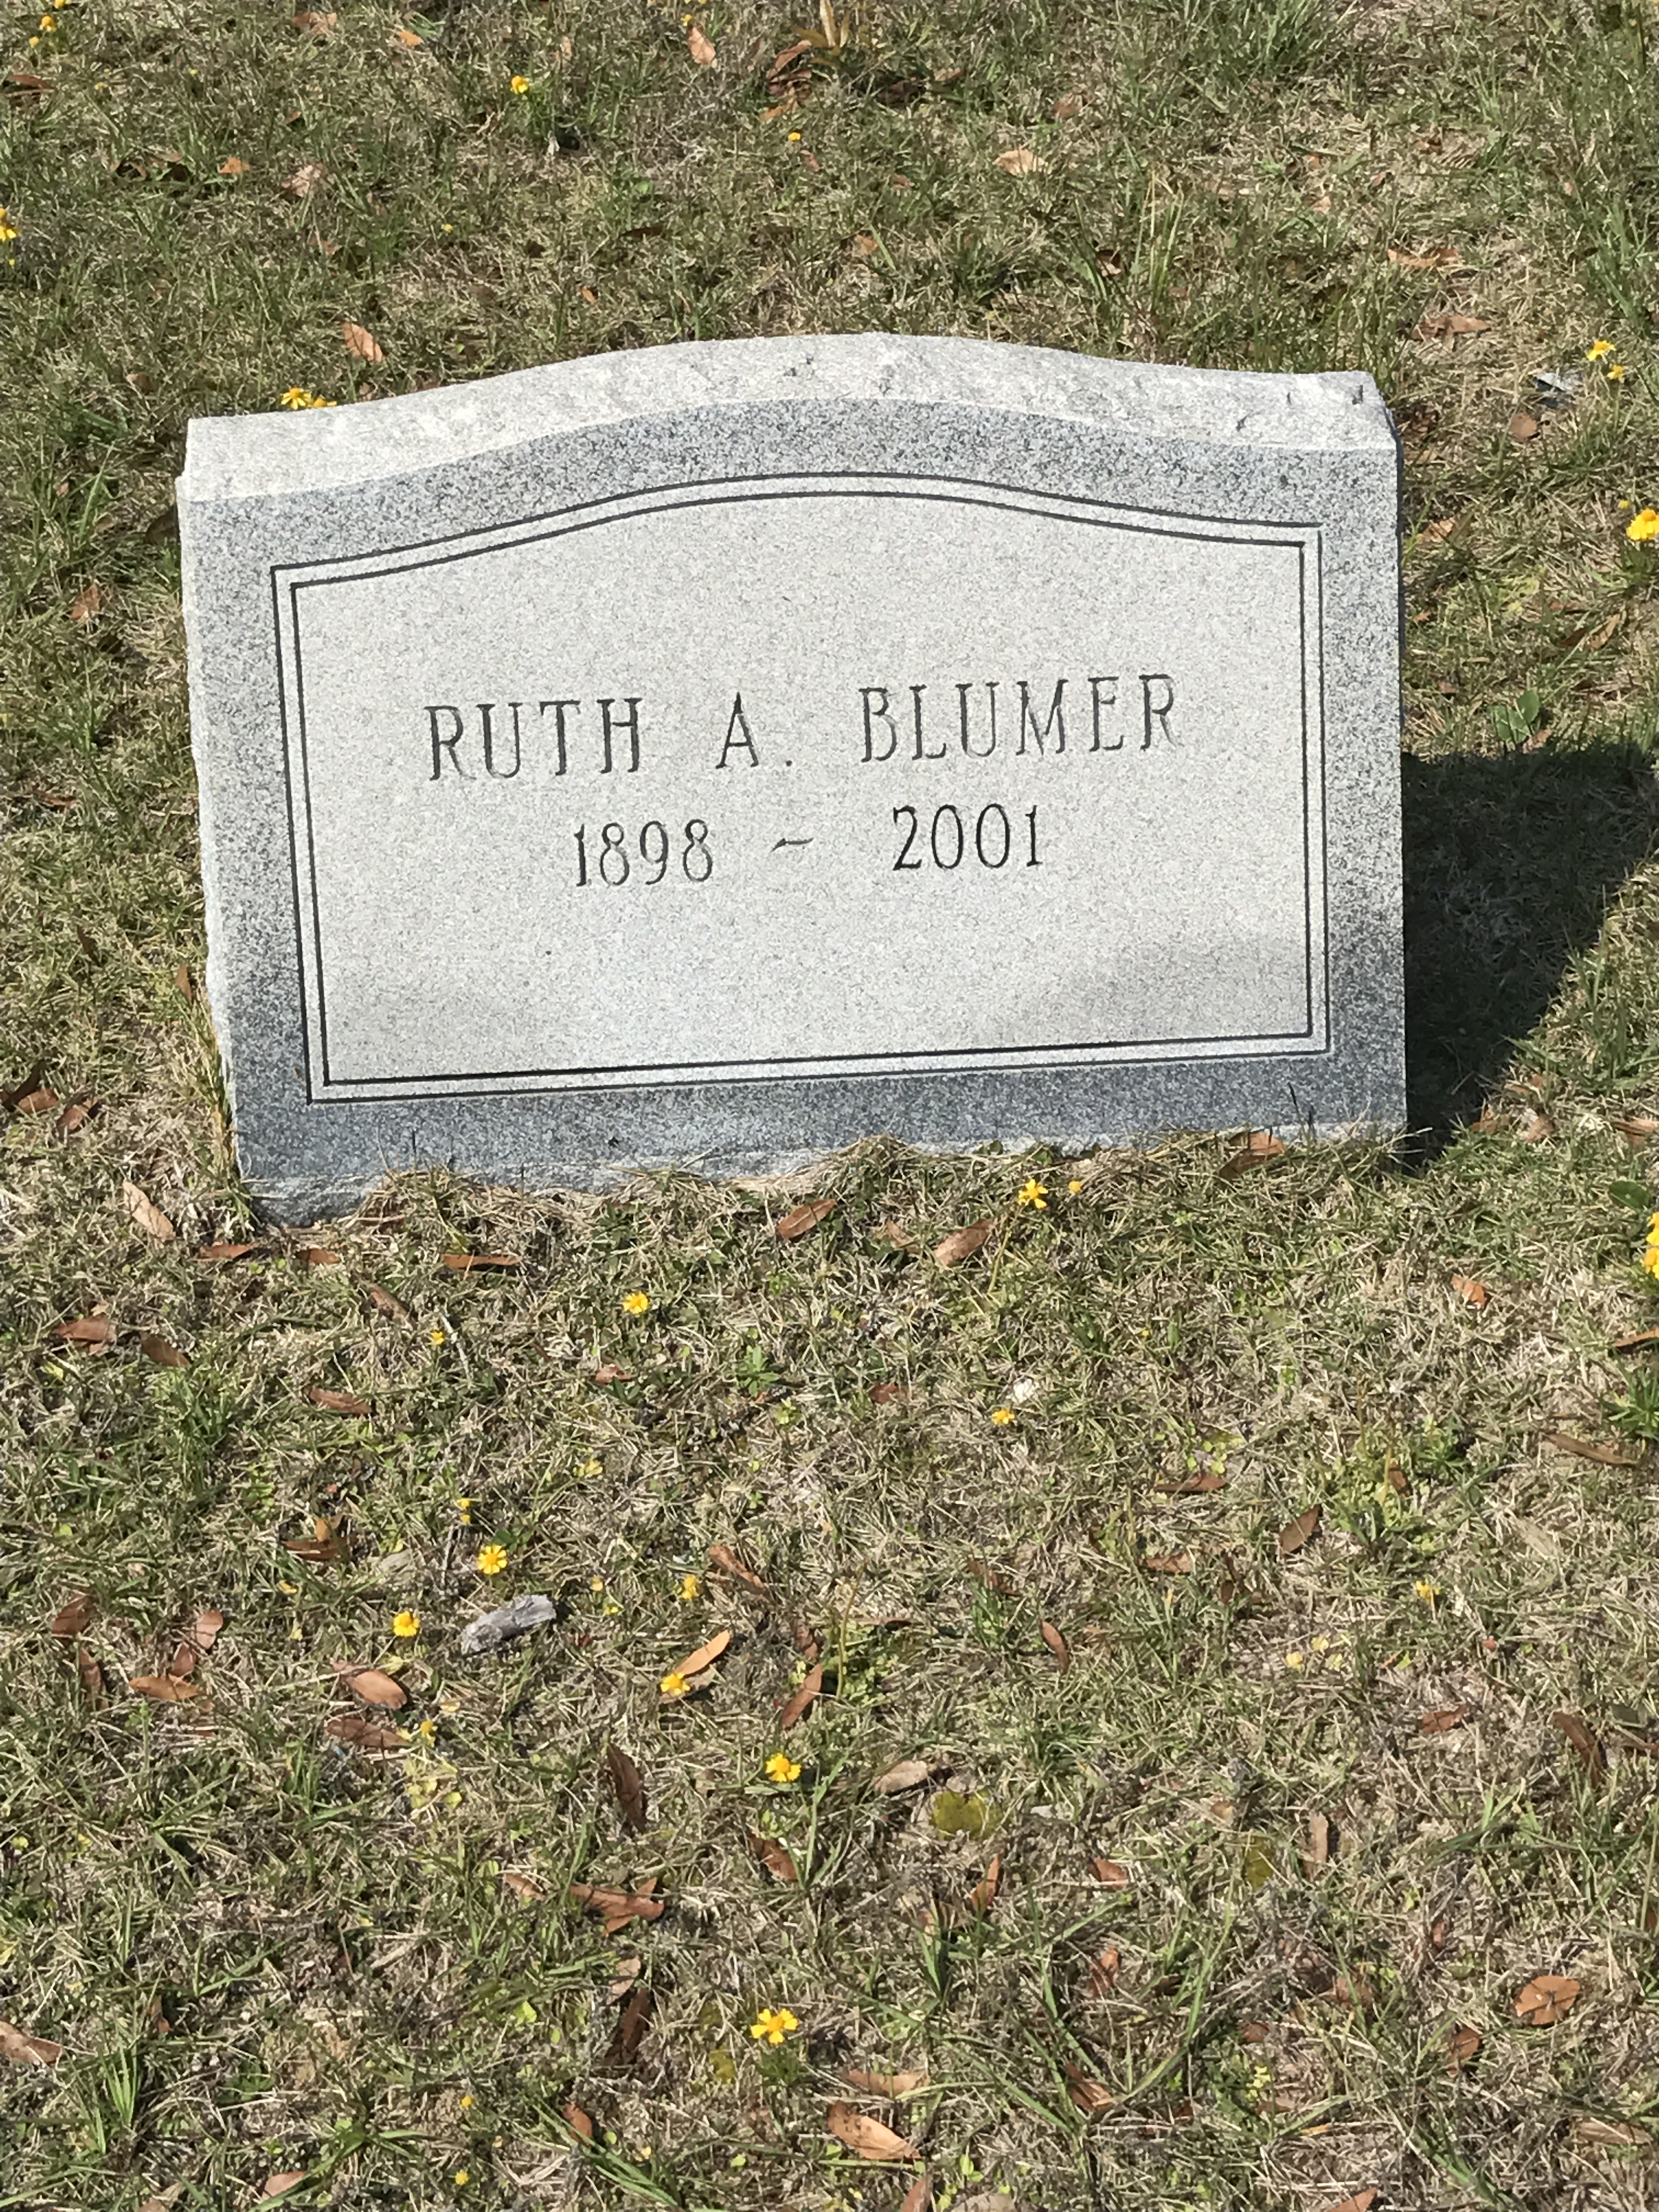 Ruth A. Blumer